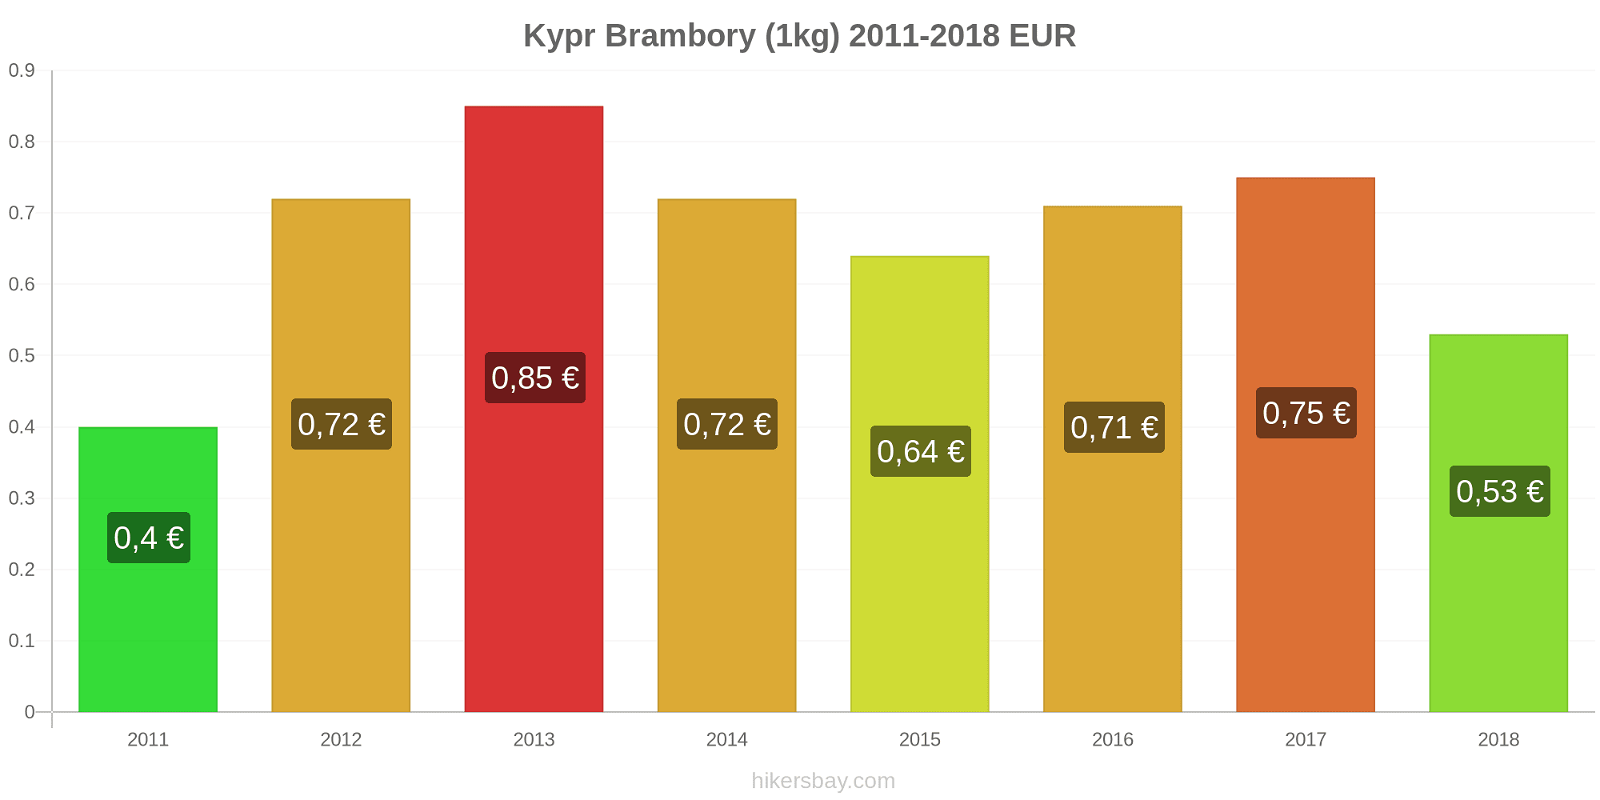 Kypr změny cen Brambory (1kg) hikersbay.com